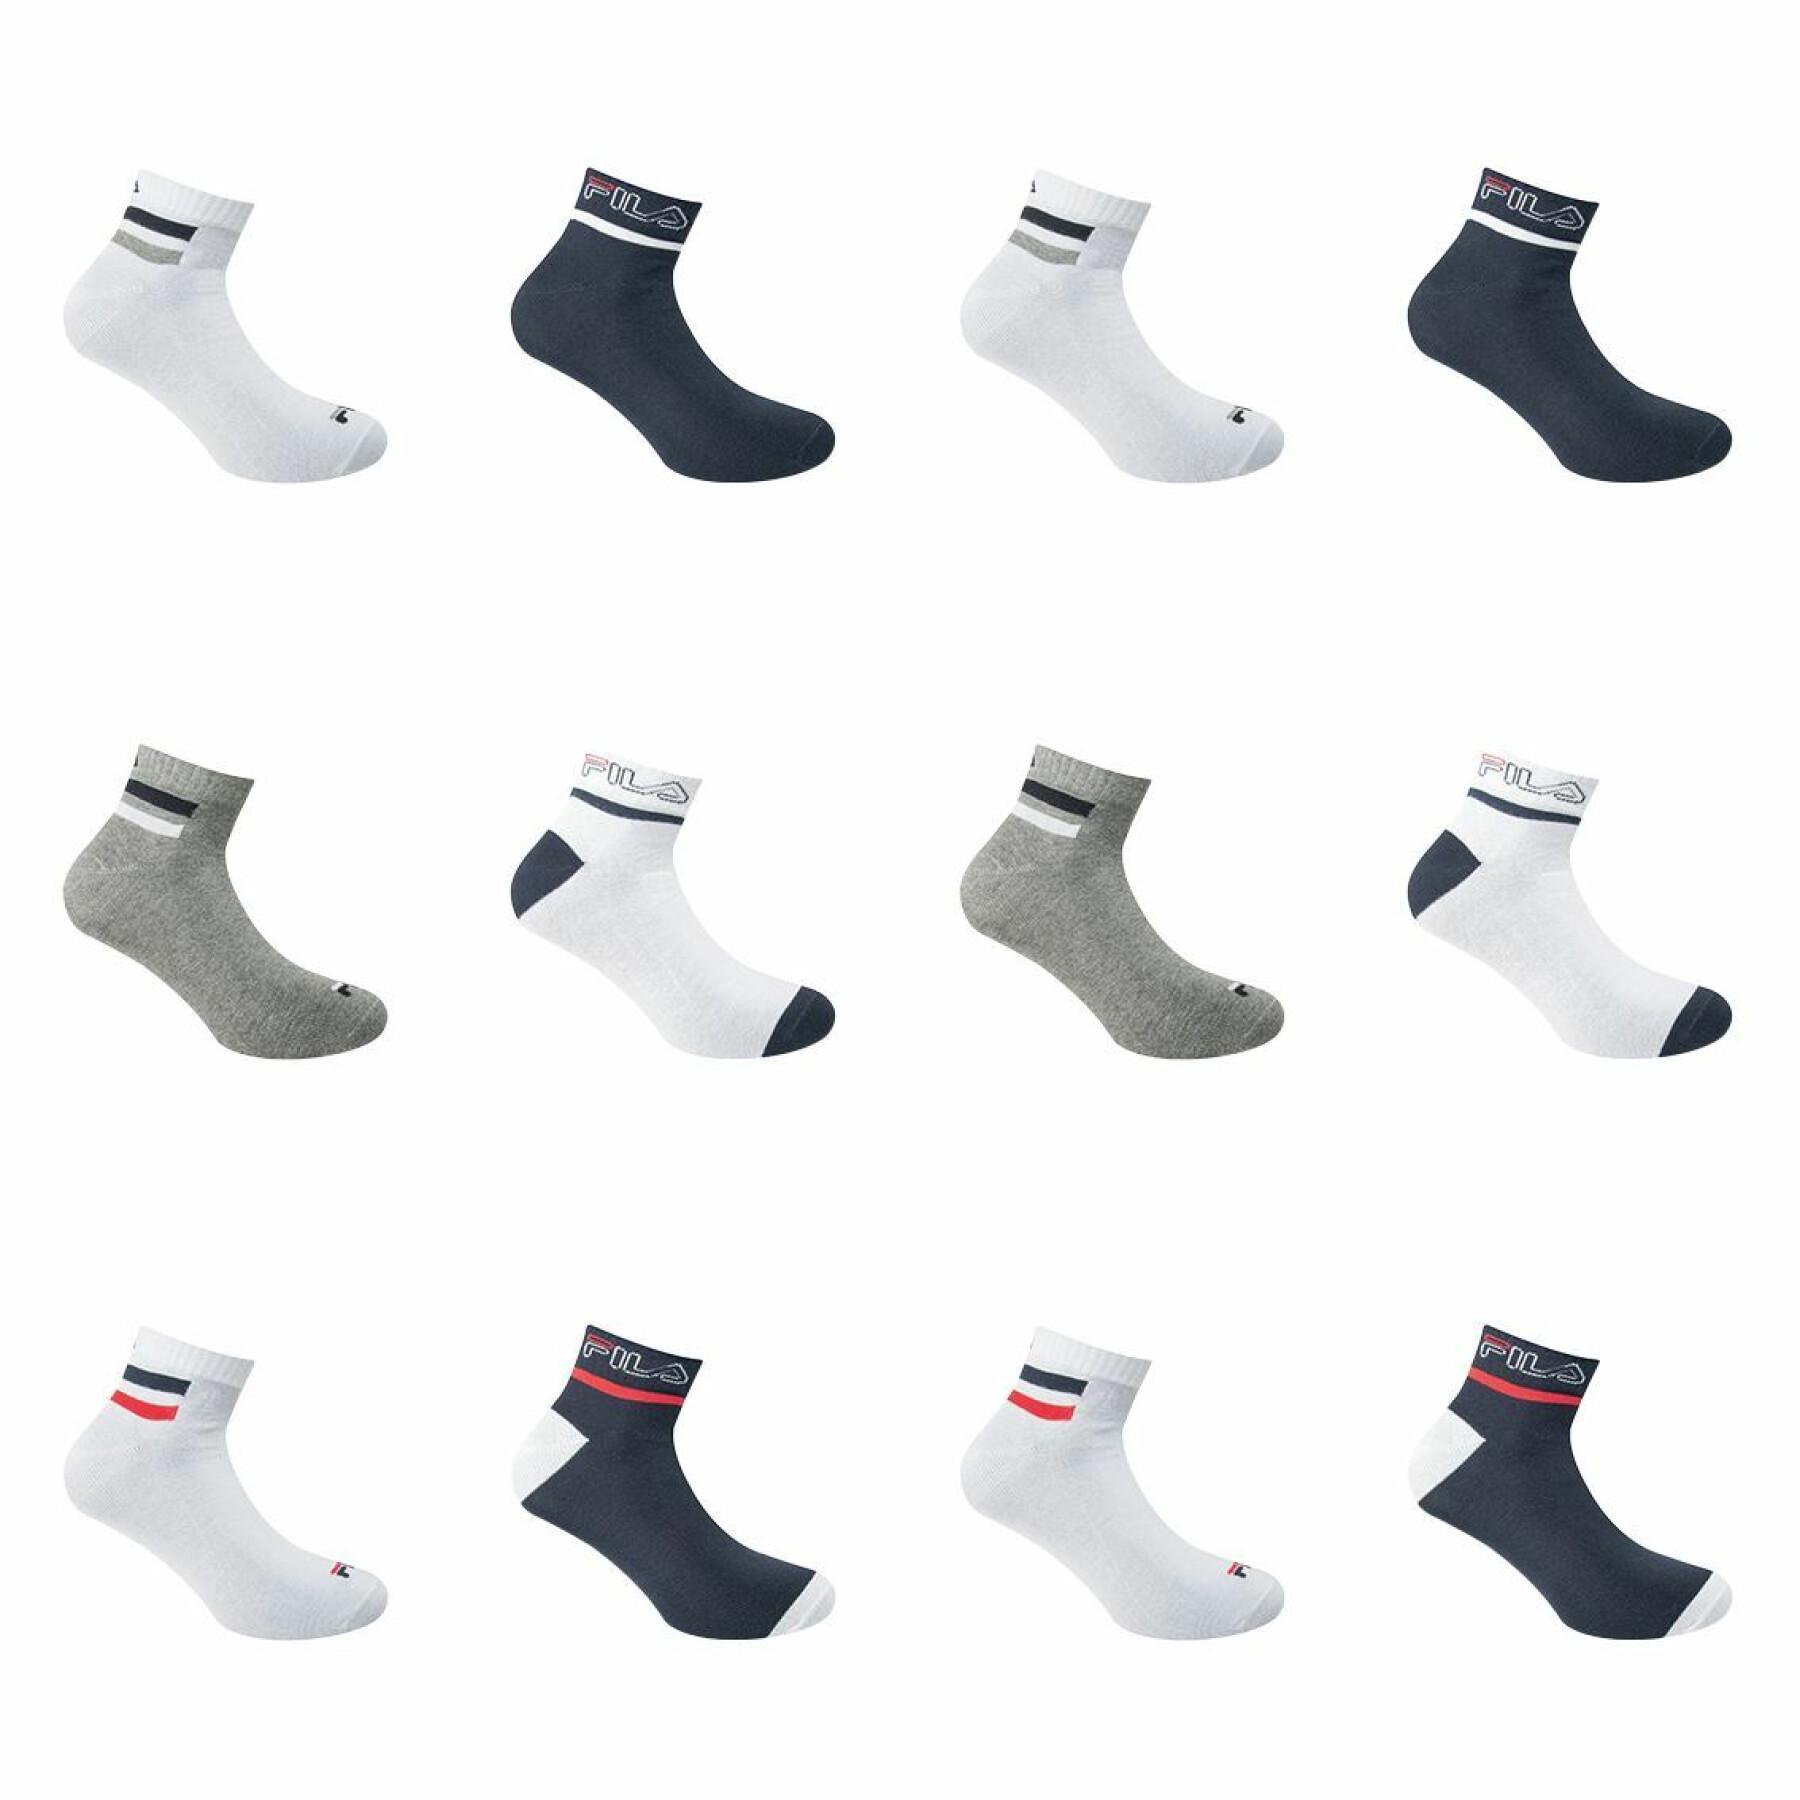 Lot of 12 pairs of socks Fila F2034+F2032